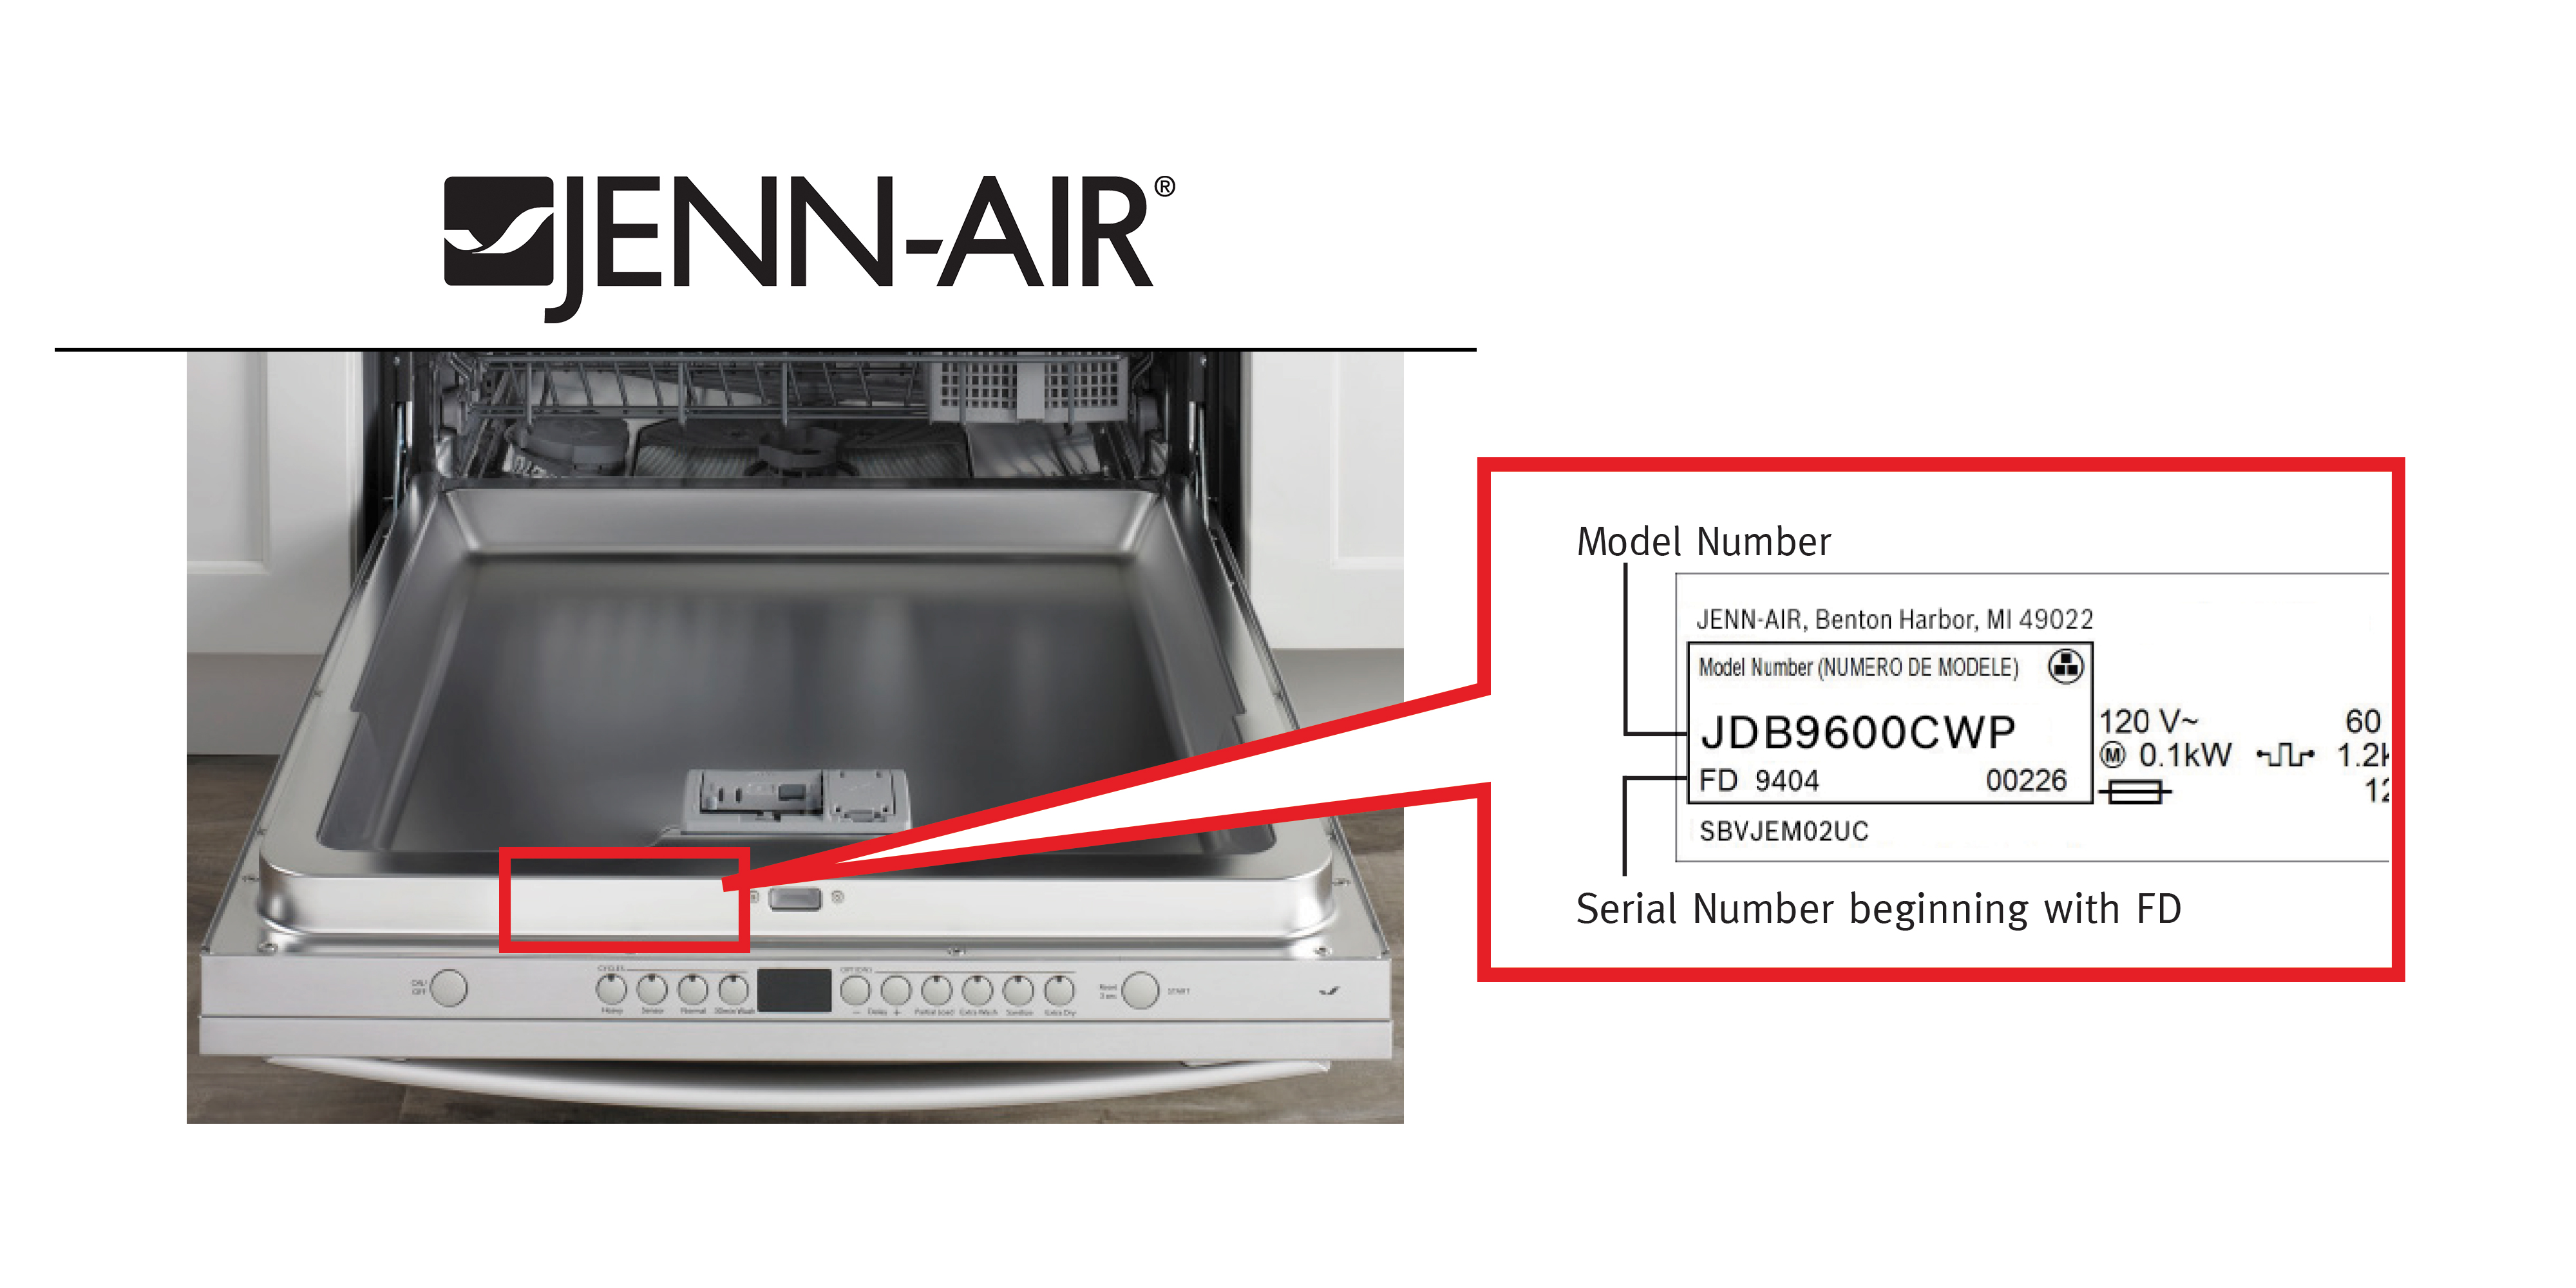 jenn air dishwasher control panel not working